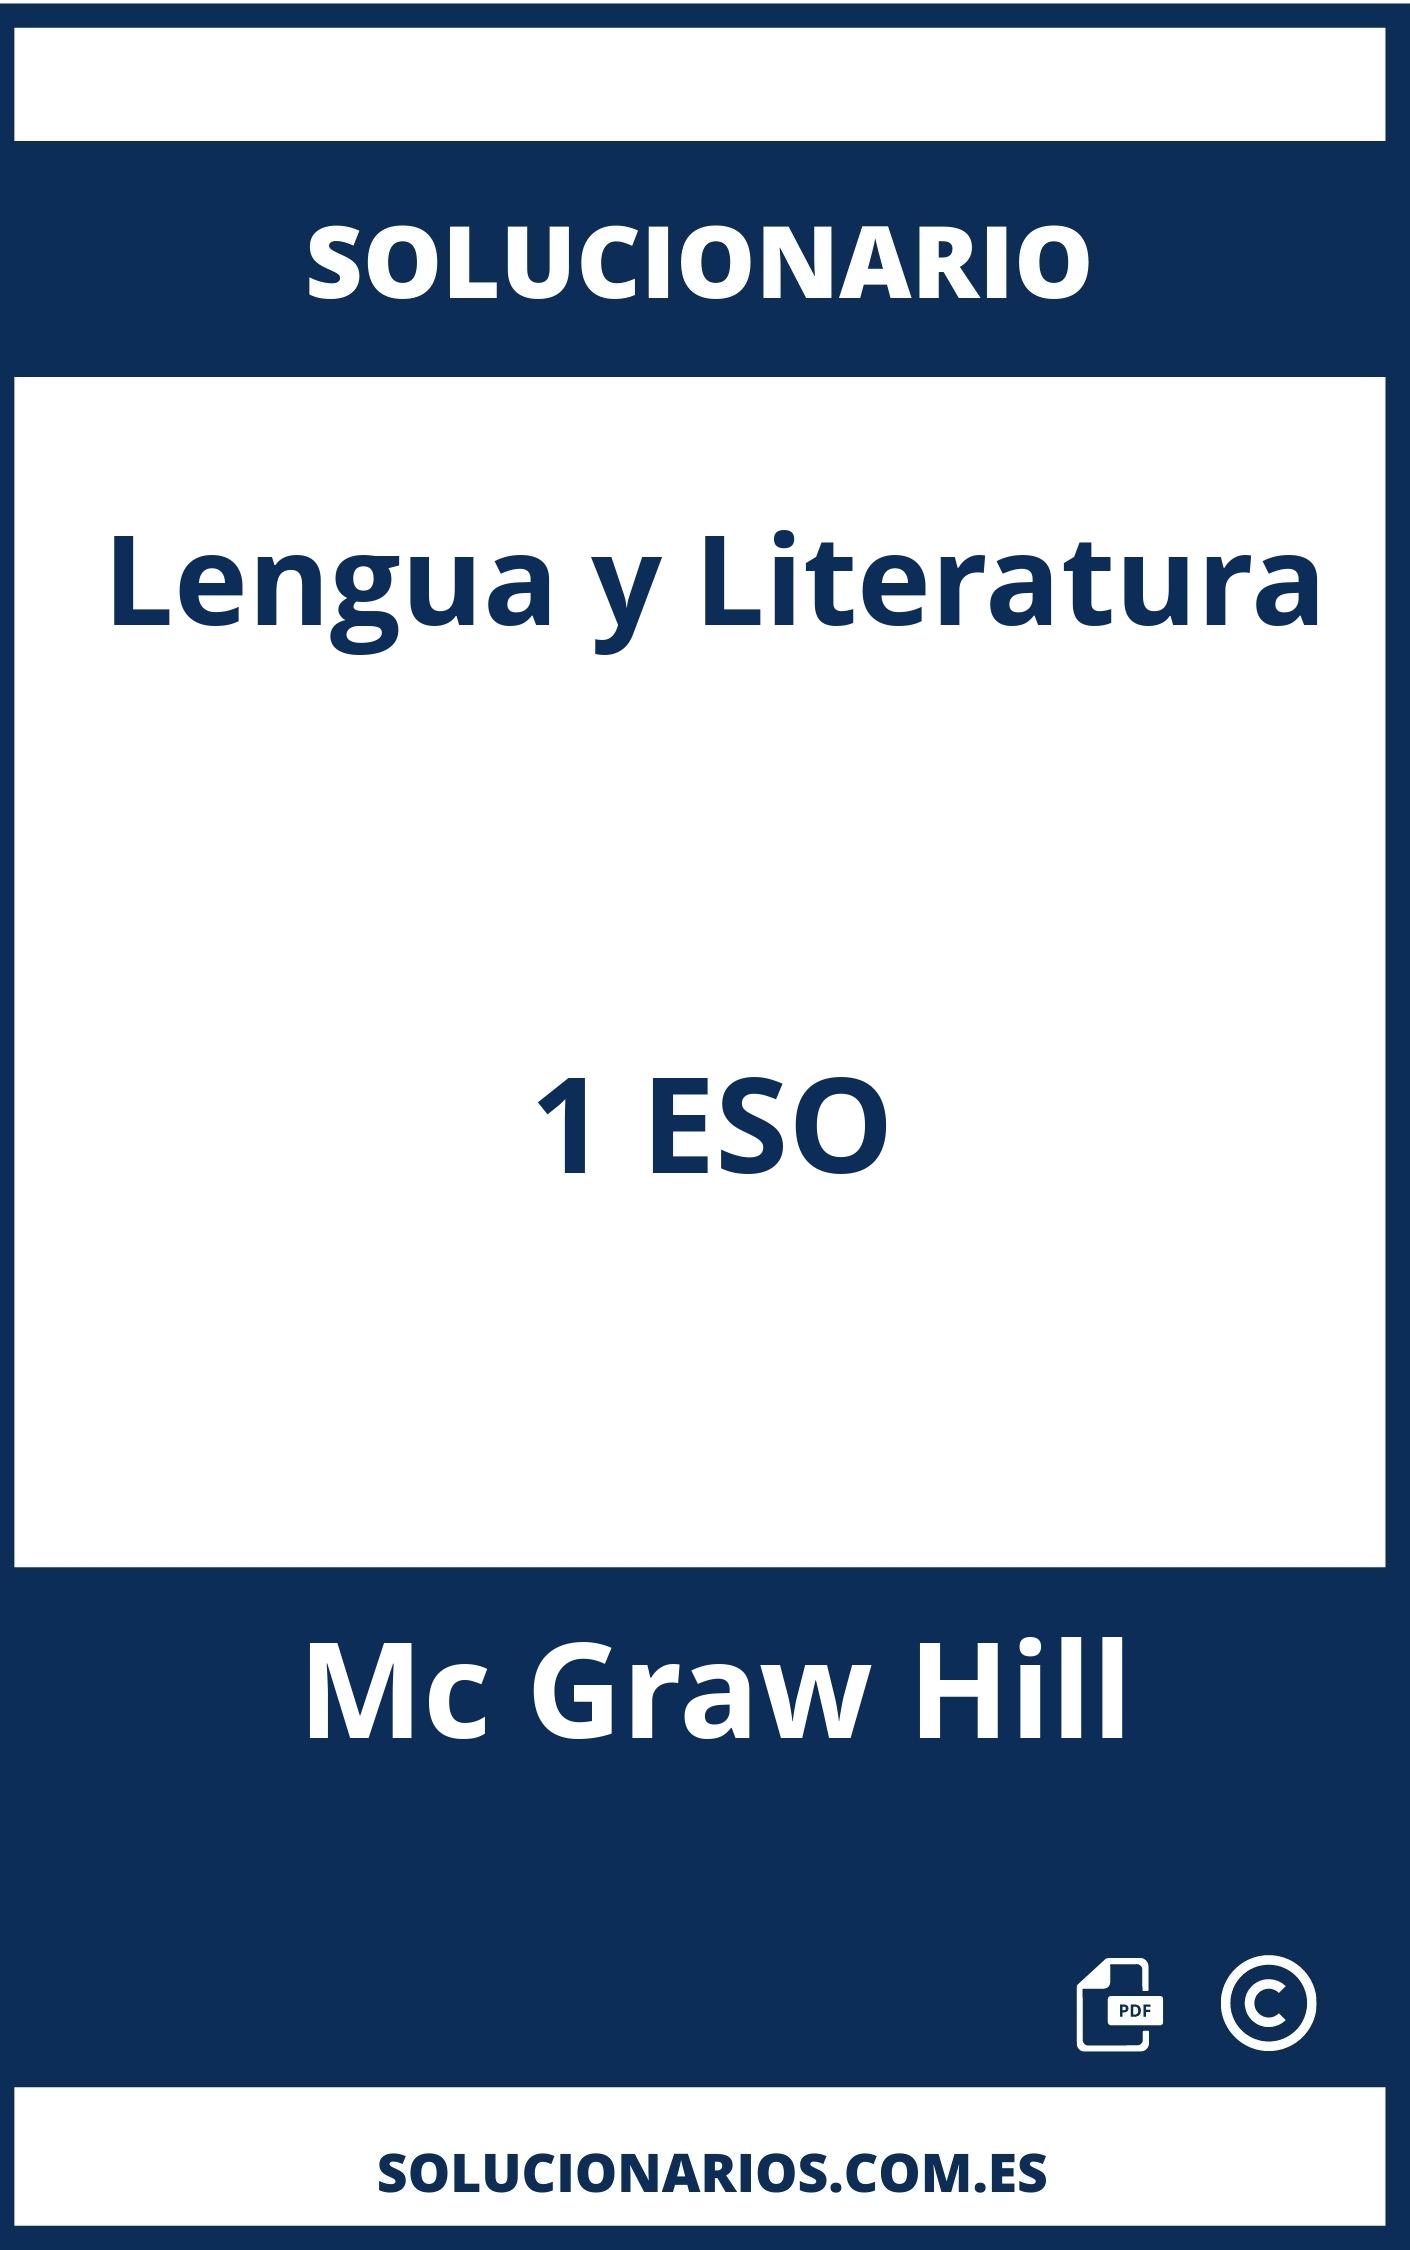 Solucionario Lengua y Literatura 1 ESO Mc Graw Hill